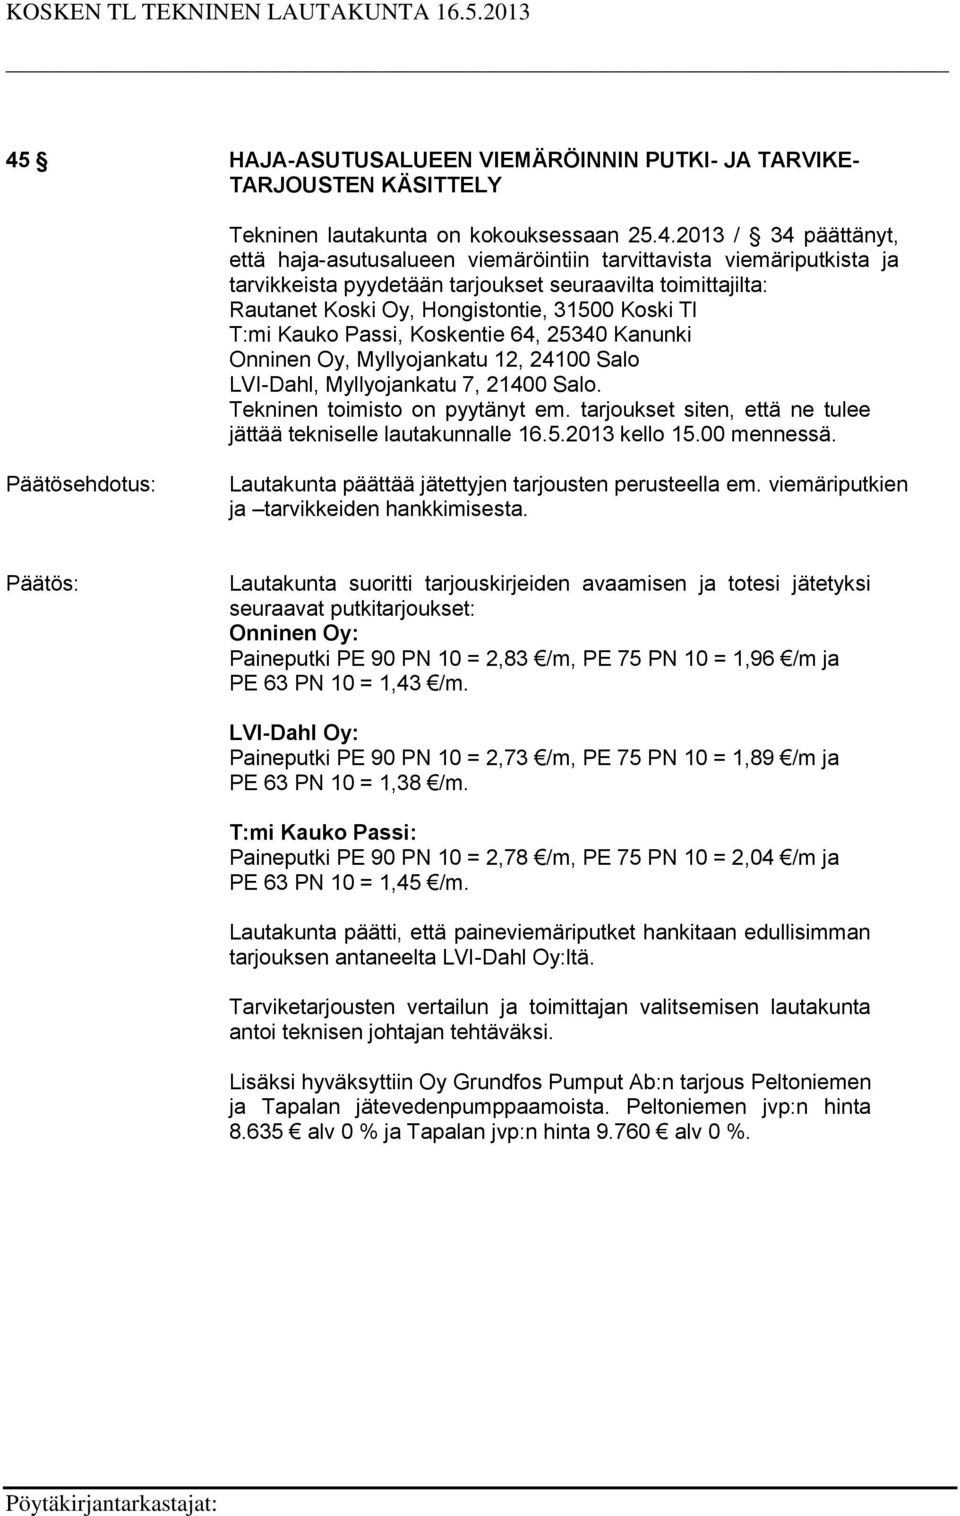 12, 24100 Salo LVI-Dahl, Myllyojankatu 7, 21400 Salo. Tekninen toimisto on pyytänyt em. tarjoukset siten, että ne tulee jättää tekniselle lautakunnalle 16.5.2013 kello 15.00 mennessä.